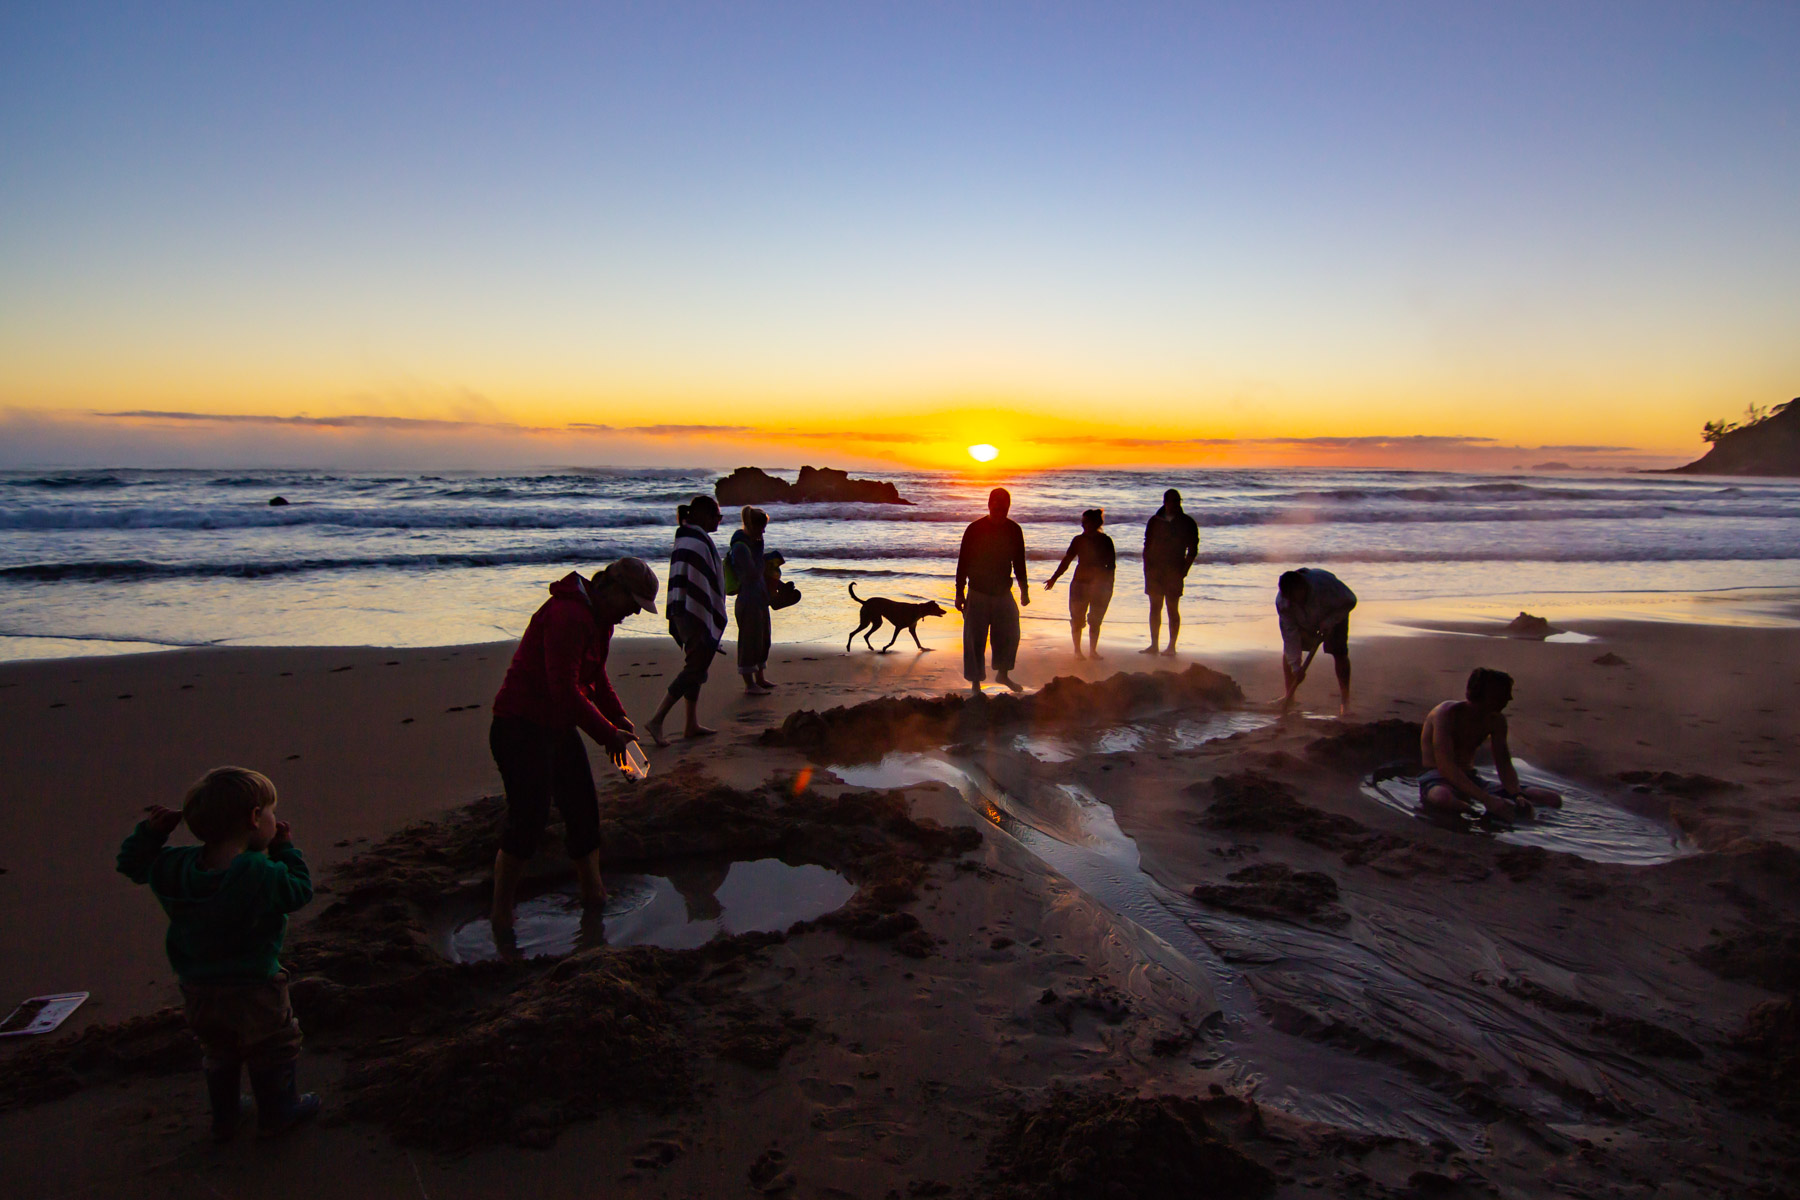 Au lever de soleil, silhouettes de personnes debout sur une plage. Certaines se creusent dans le sable une petite piscine d’eau chaude.